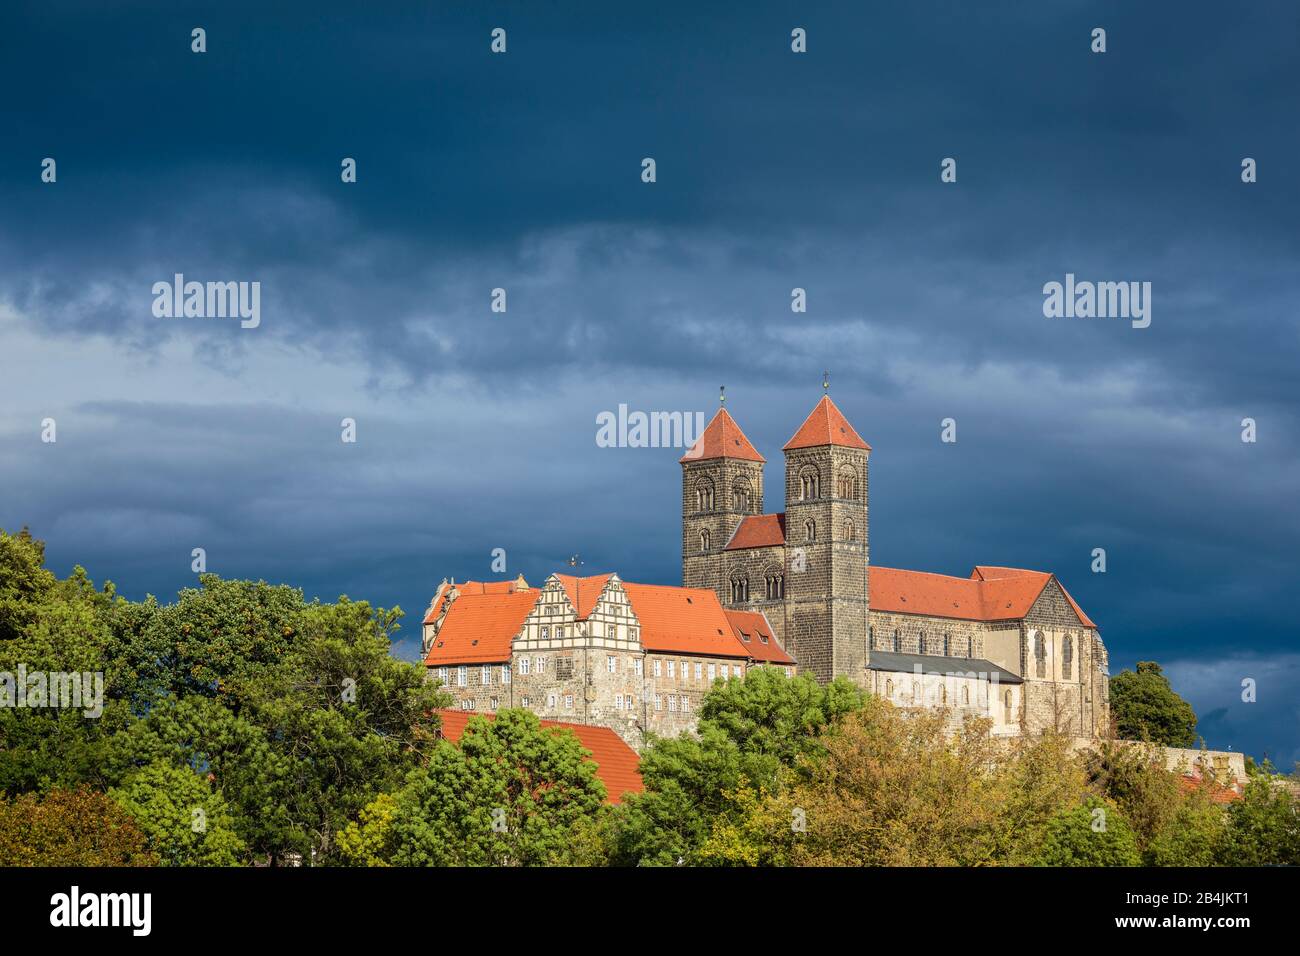 Europa, Deutschland, Sachsen-Anhalt, Quedlinburg. VOR einer Gewitterfront leuchtet der Dom in der Nachmittagssonne. Banque D'Images